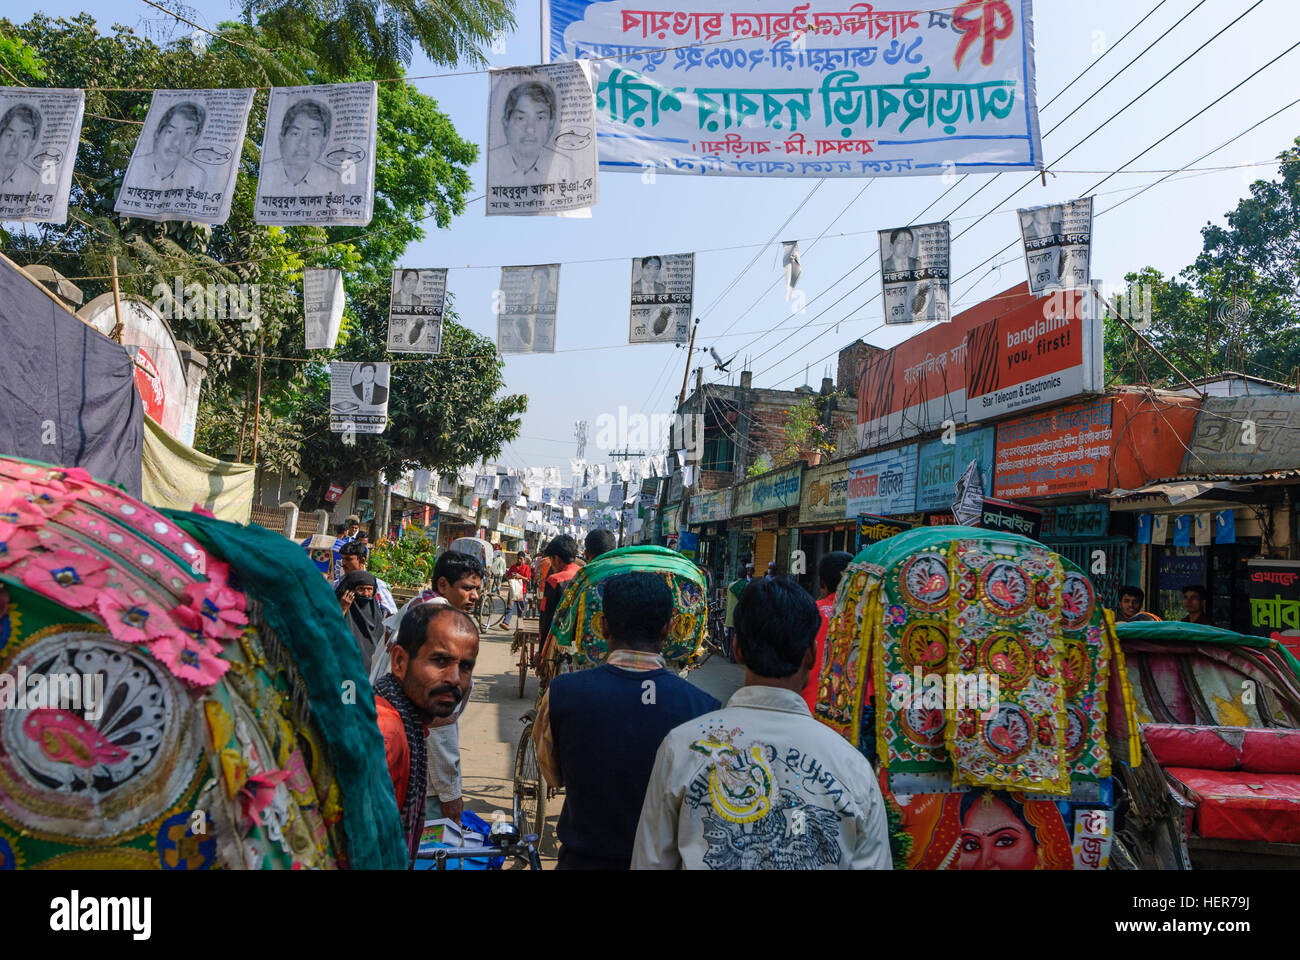 Akhaura: Electoral promotion, Chittagong Division, Bangladesh Stock Photo